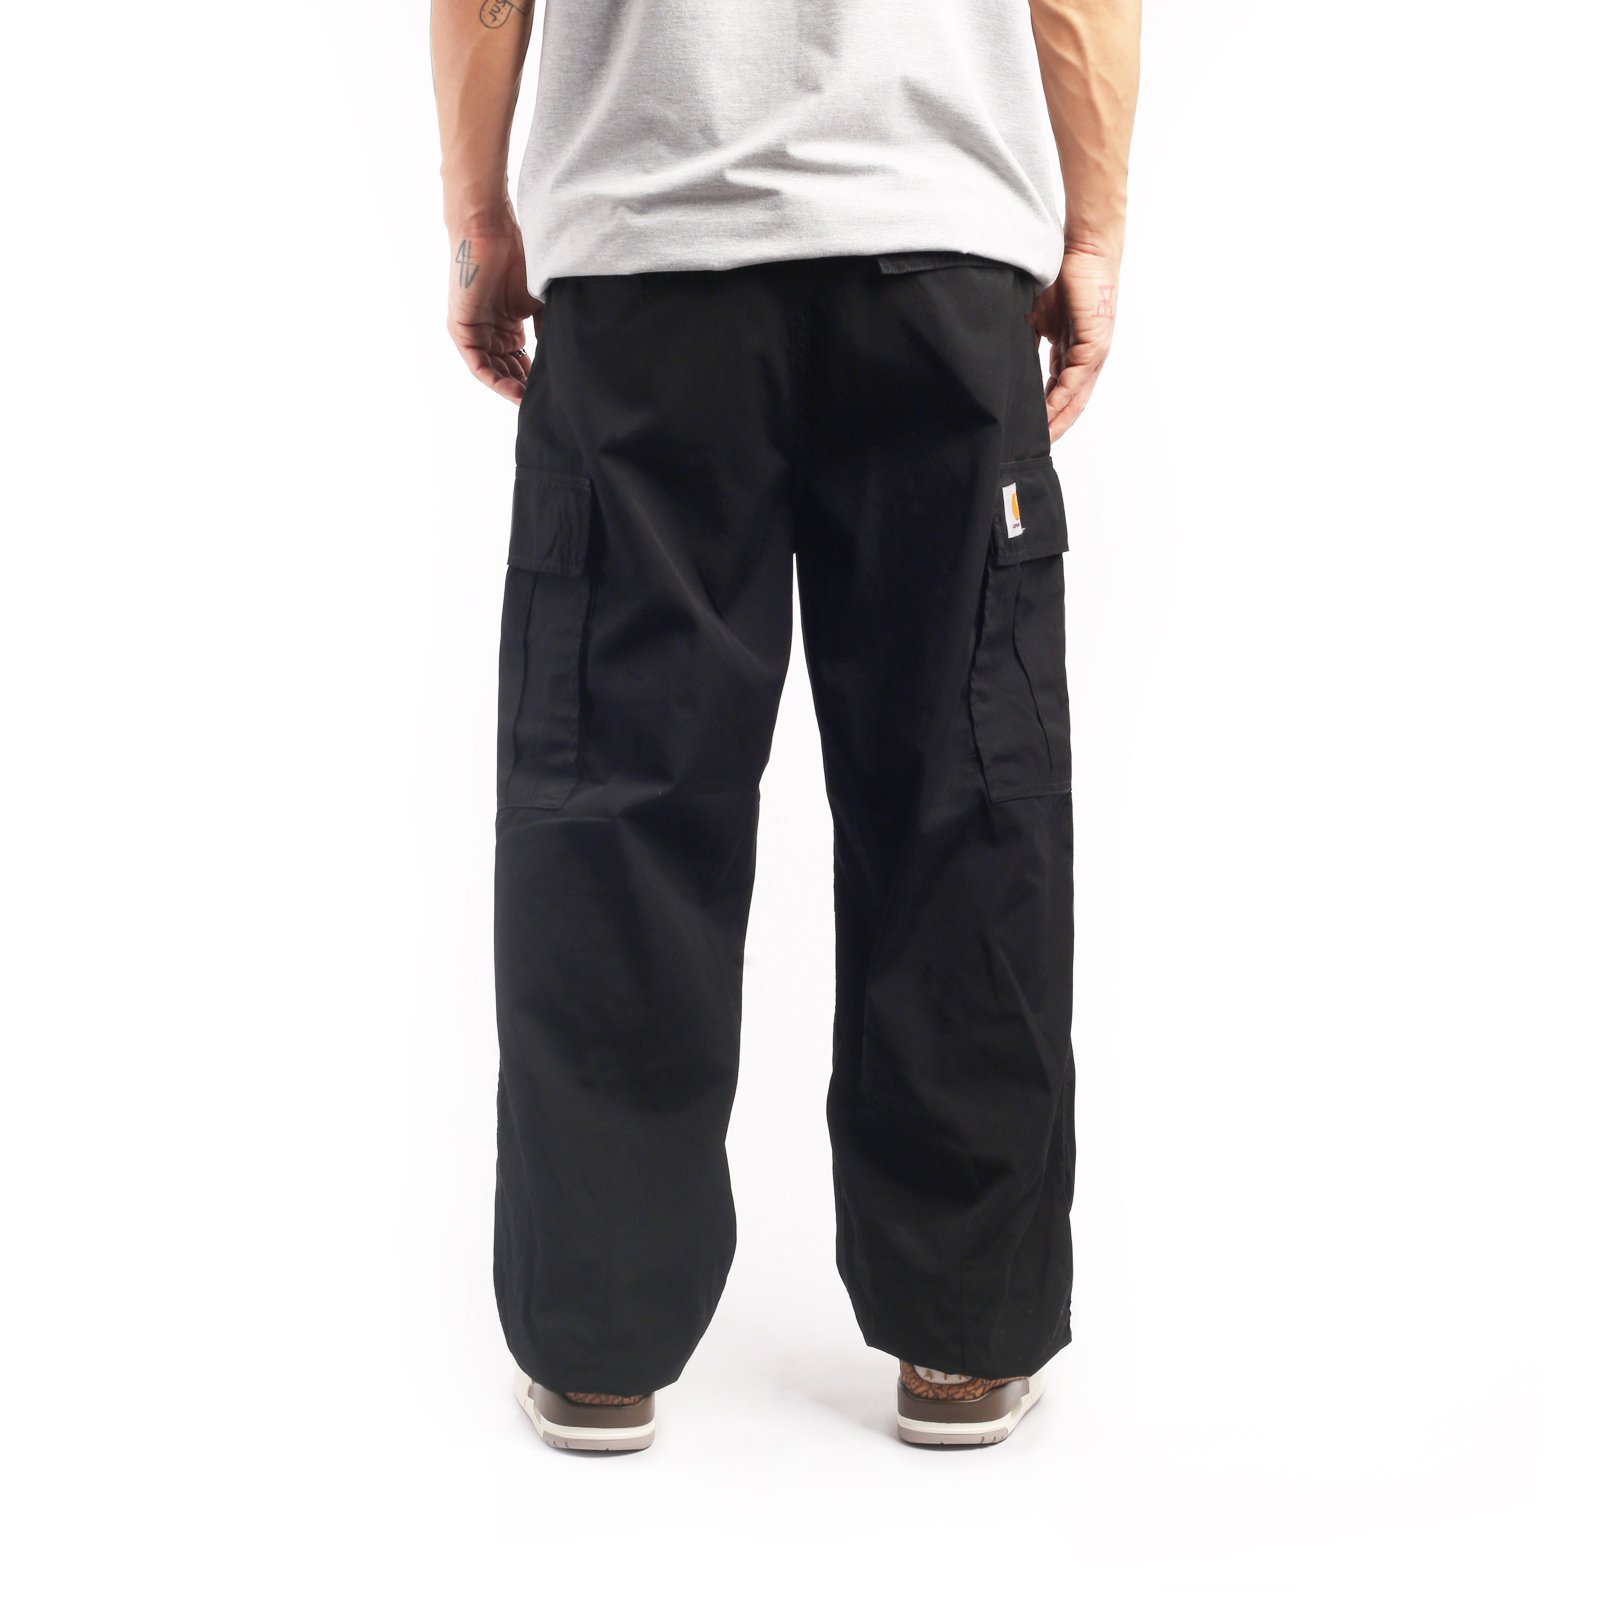 мужские брюки Carhartt WIP Cole Cargo Pant  (I030477-black)  - цена, описание, фото 2